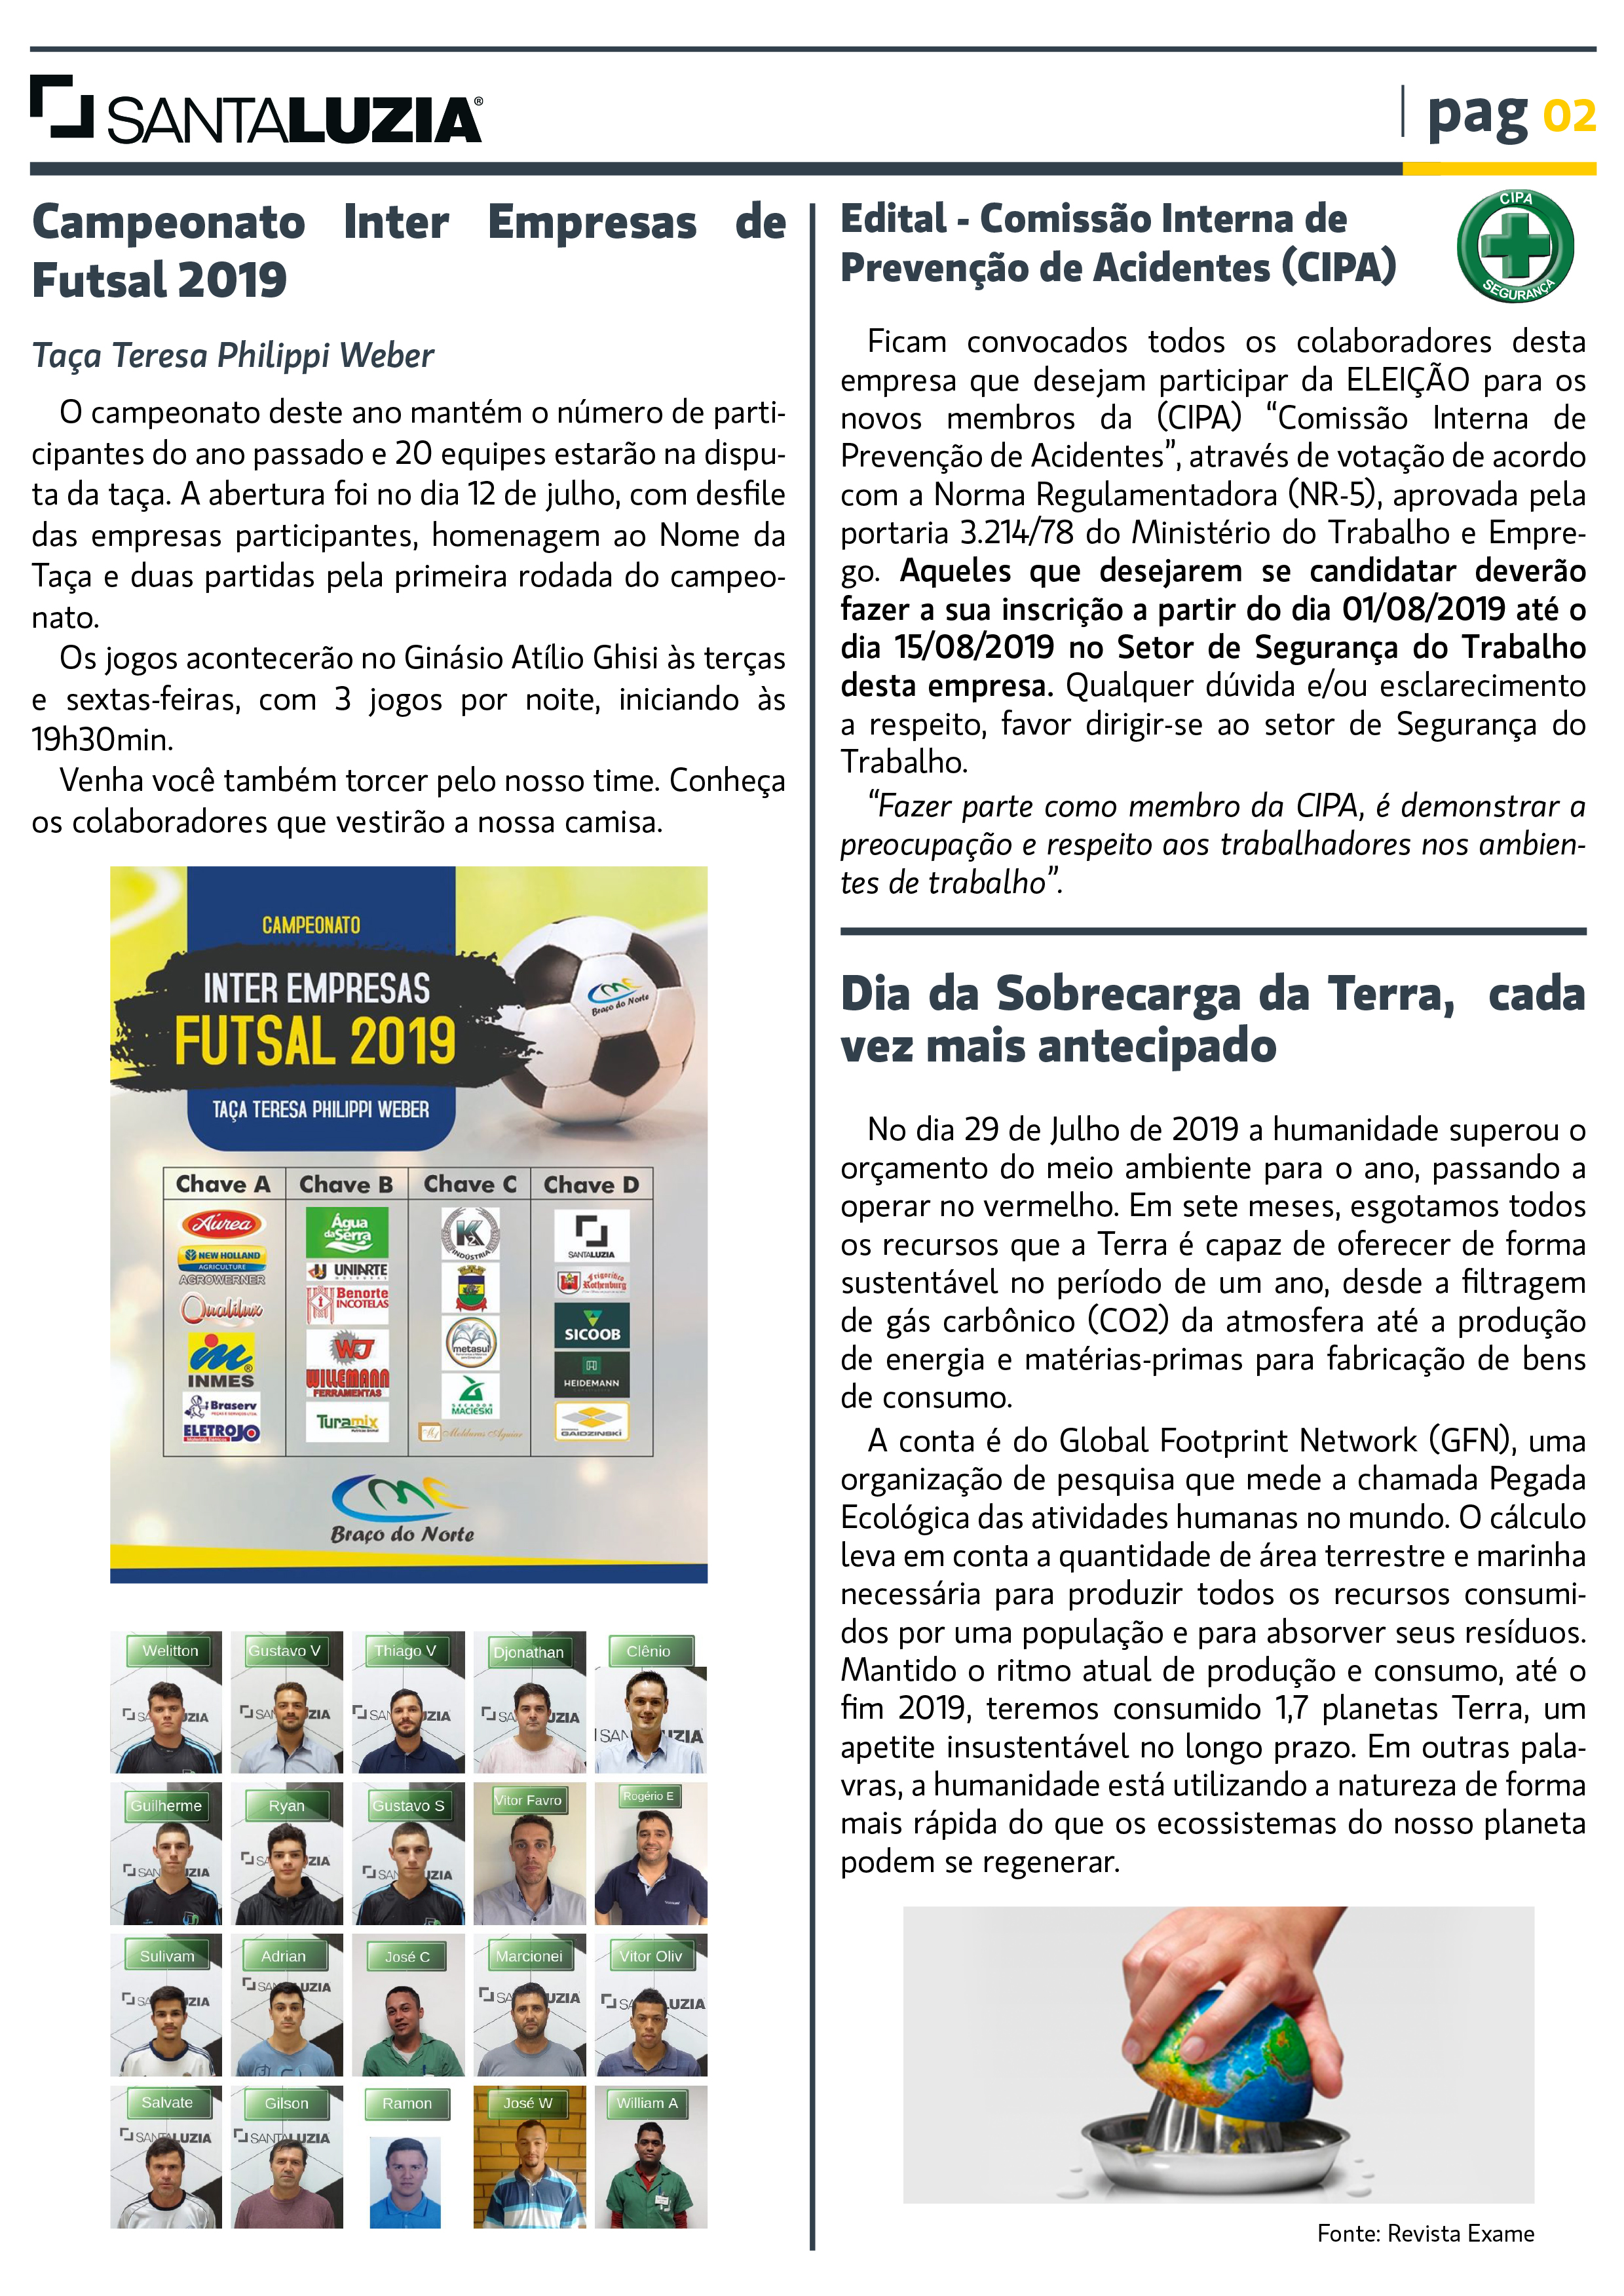 Jornal Info de Agosto 2019 - pagina 02